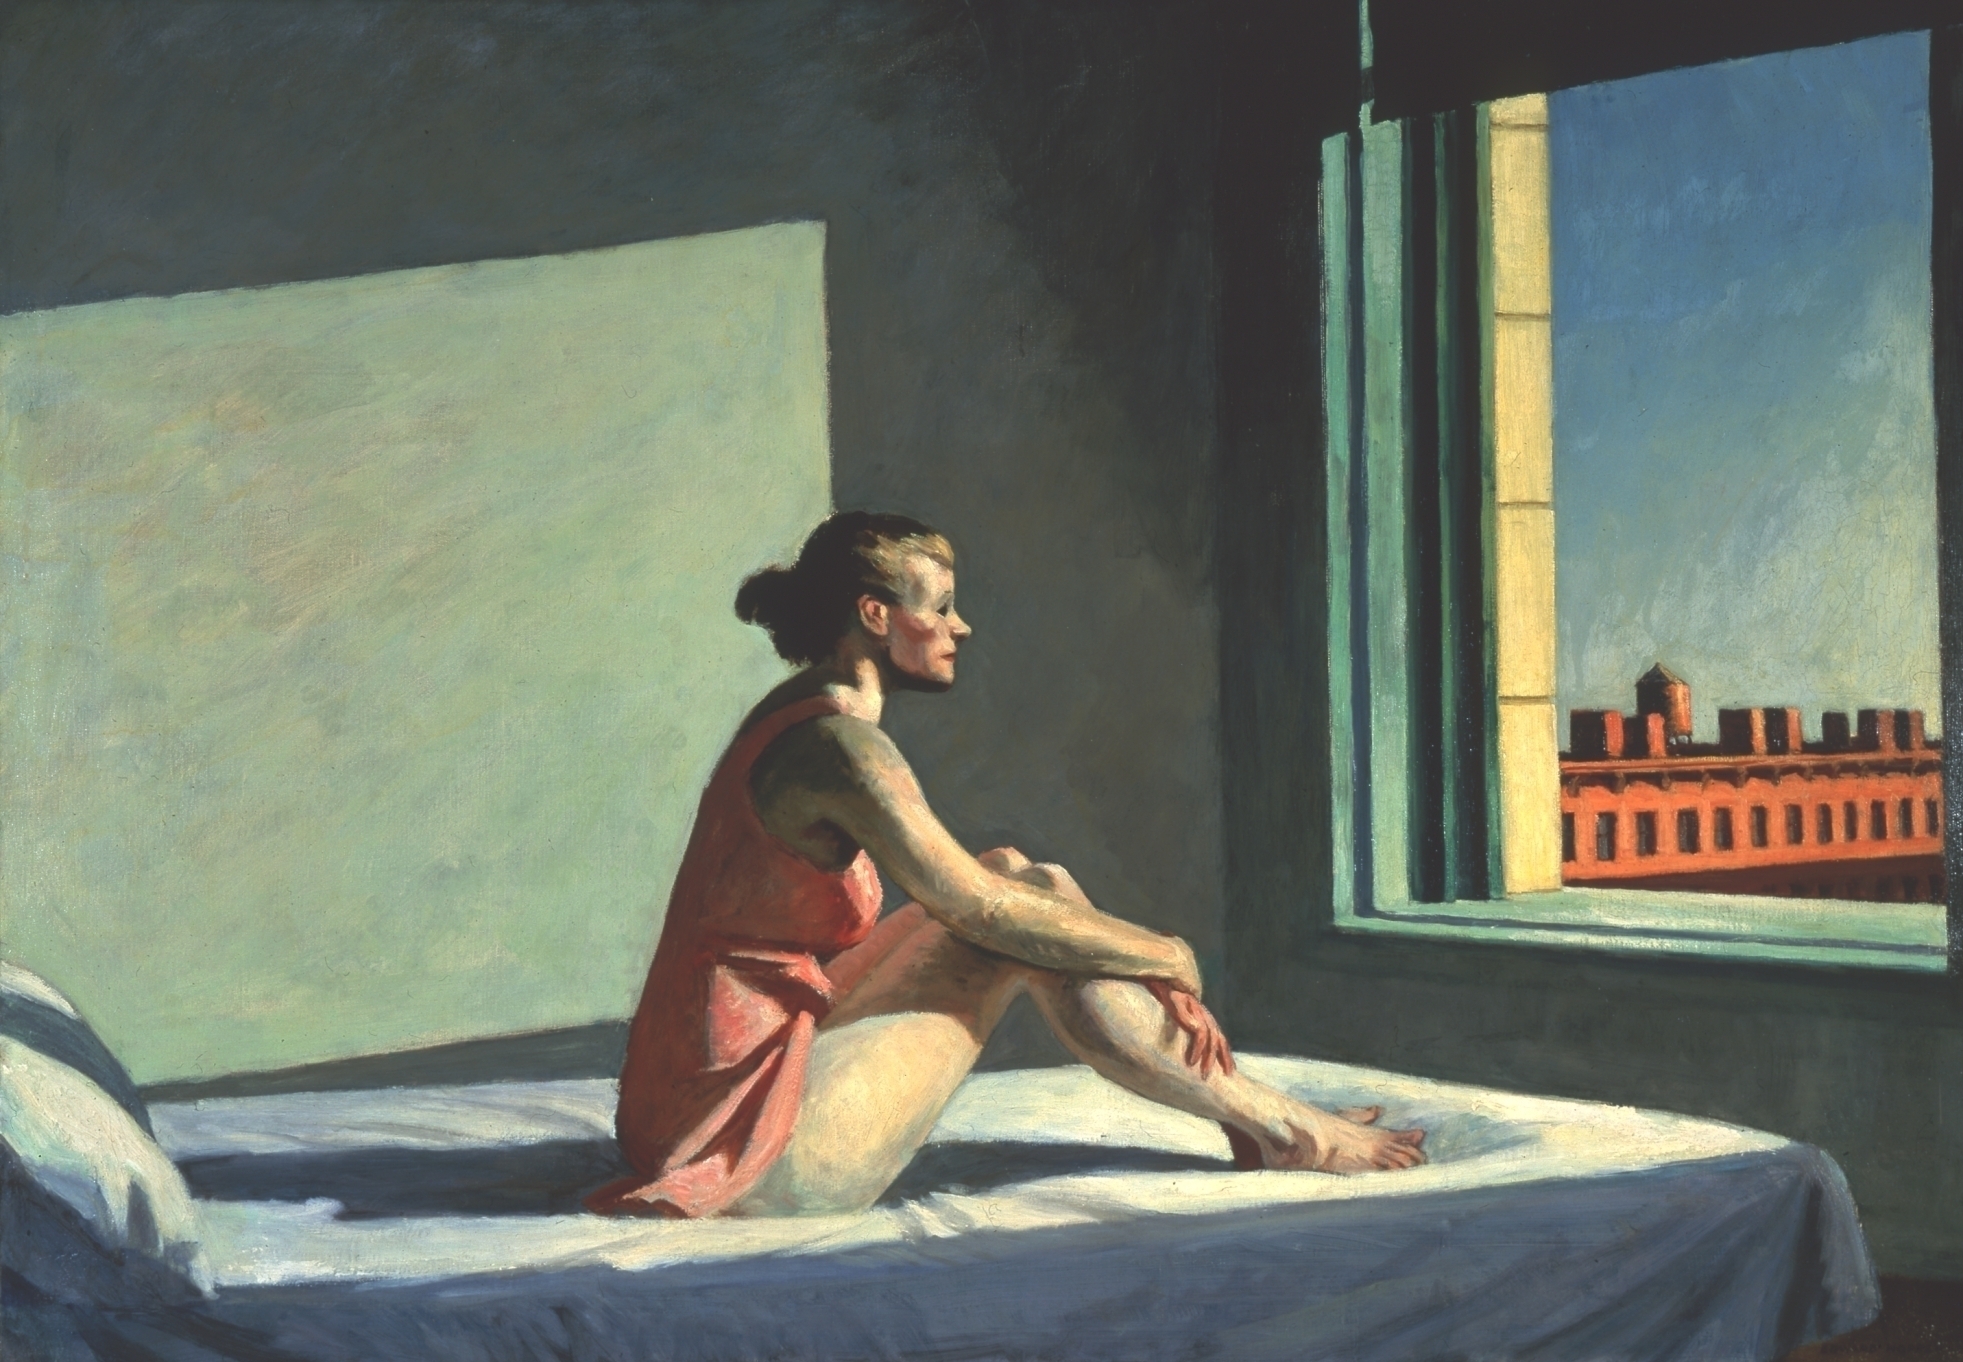 朝陽 by Edward Hopper - 1952 - 101.98 x 71.5 cm 